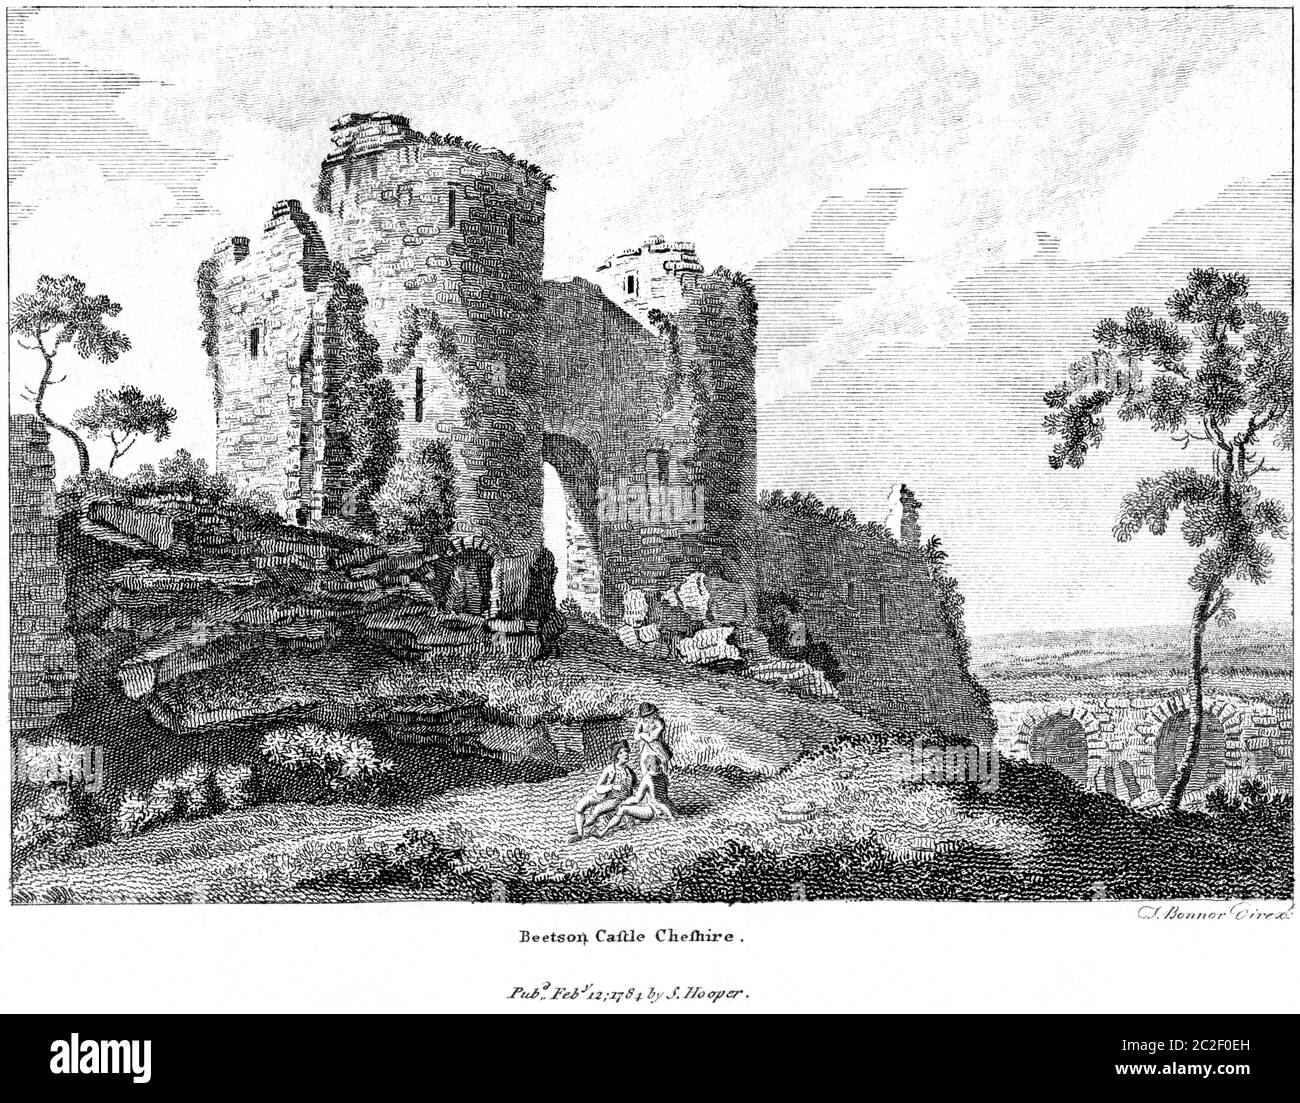 Ein Stich von Beeston Castle Cheshire Februar 12 1784, hochaufgelöst von einem Buch aus den 1780er Jahren gescannt. Glaubte, Copyright frei. Stockfoto